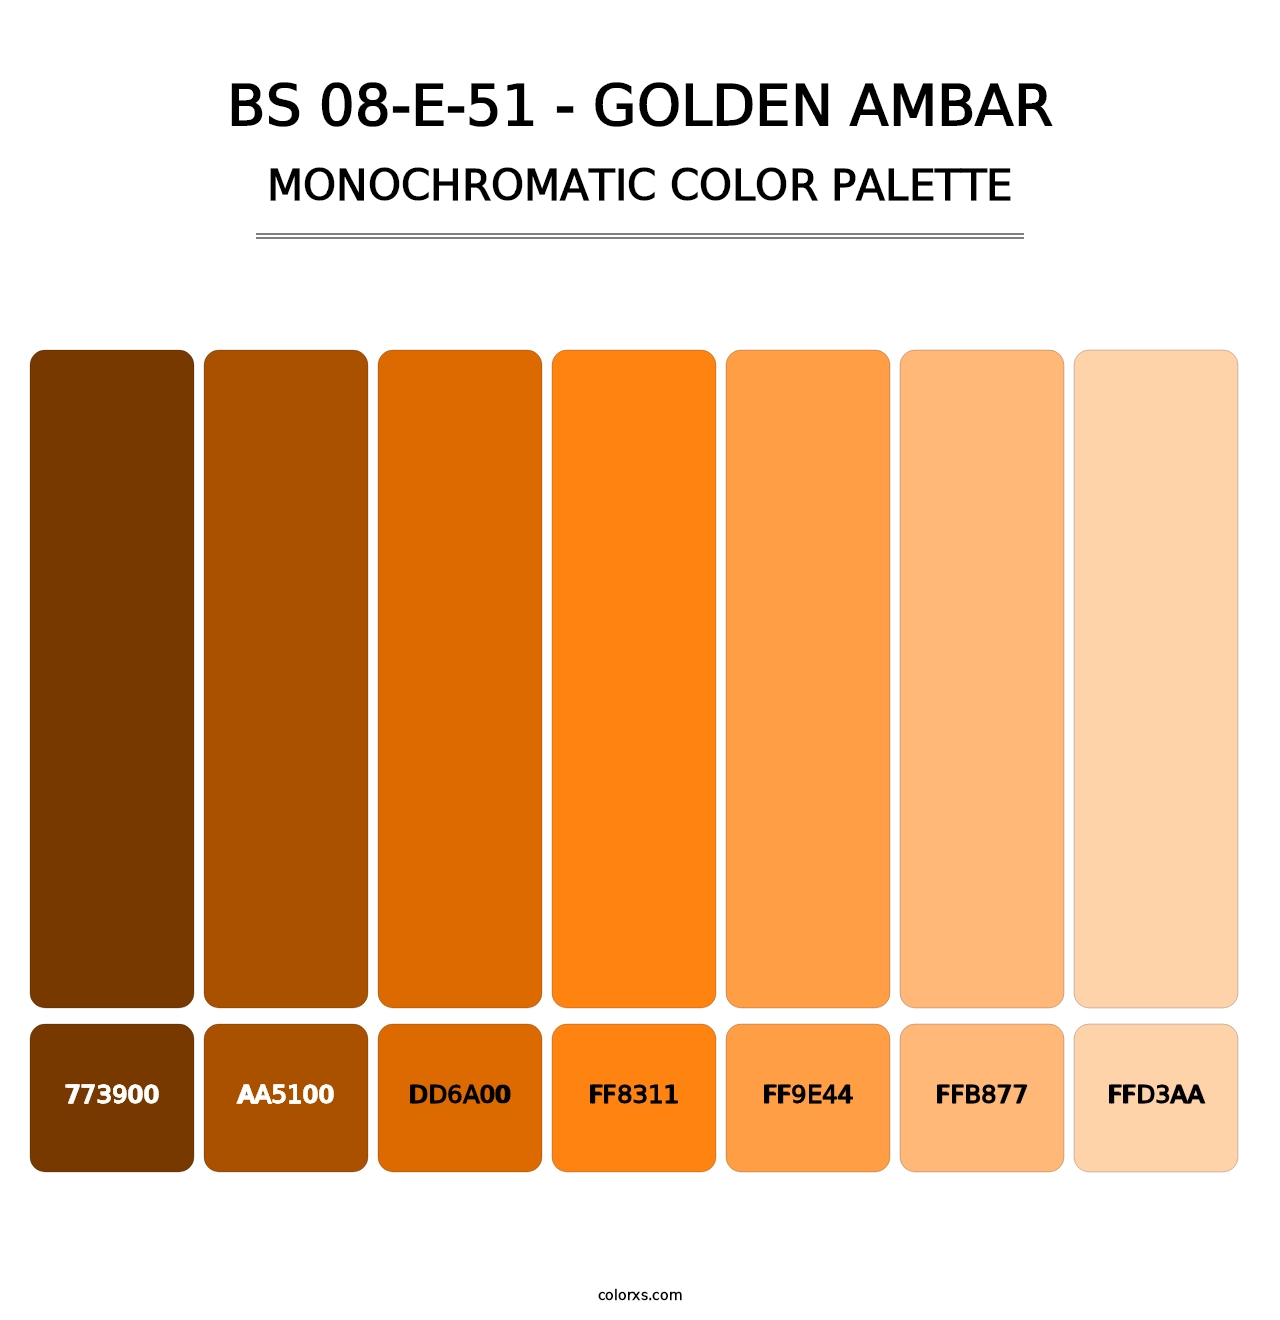 BS 08-E-51 - Golden Ambar - Monochromatic Color Palette